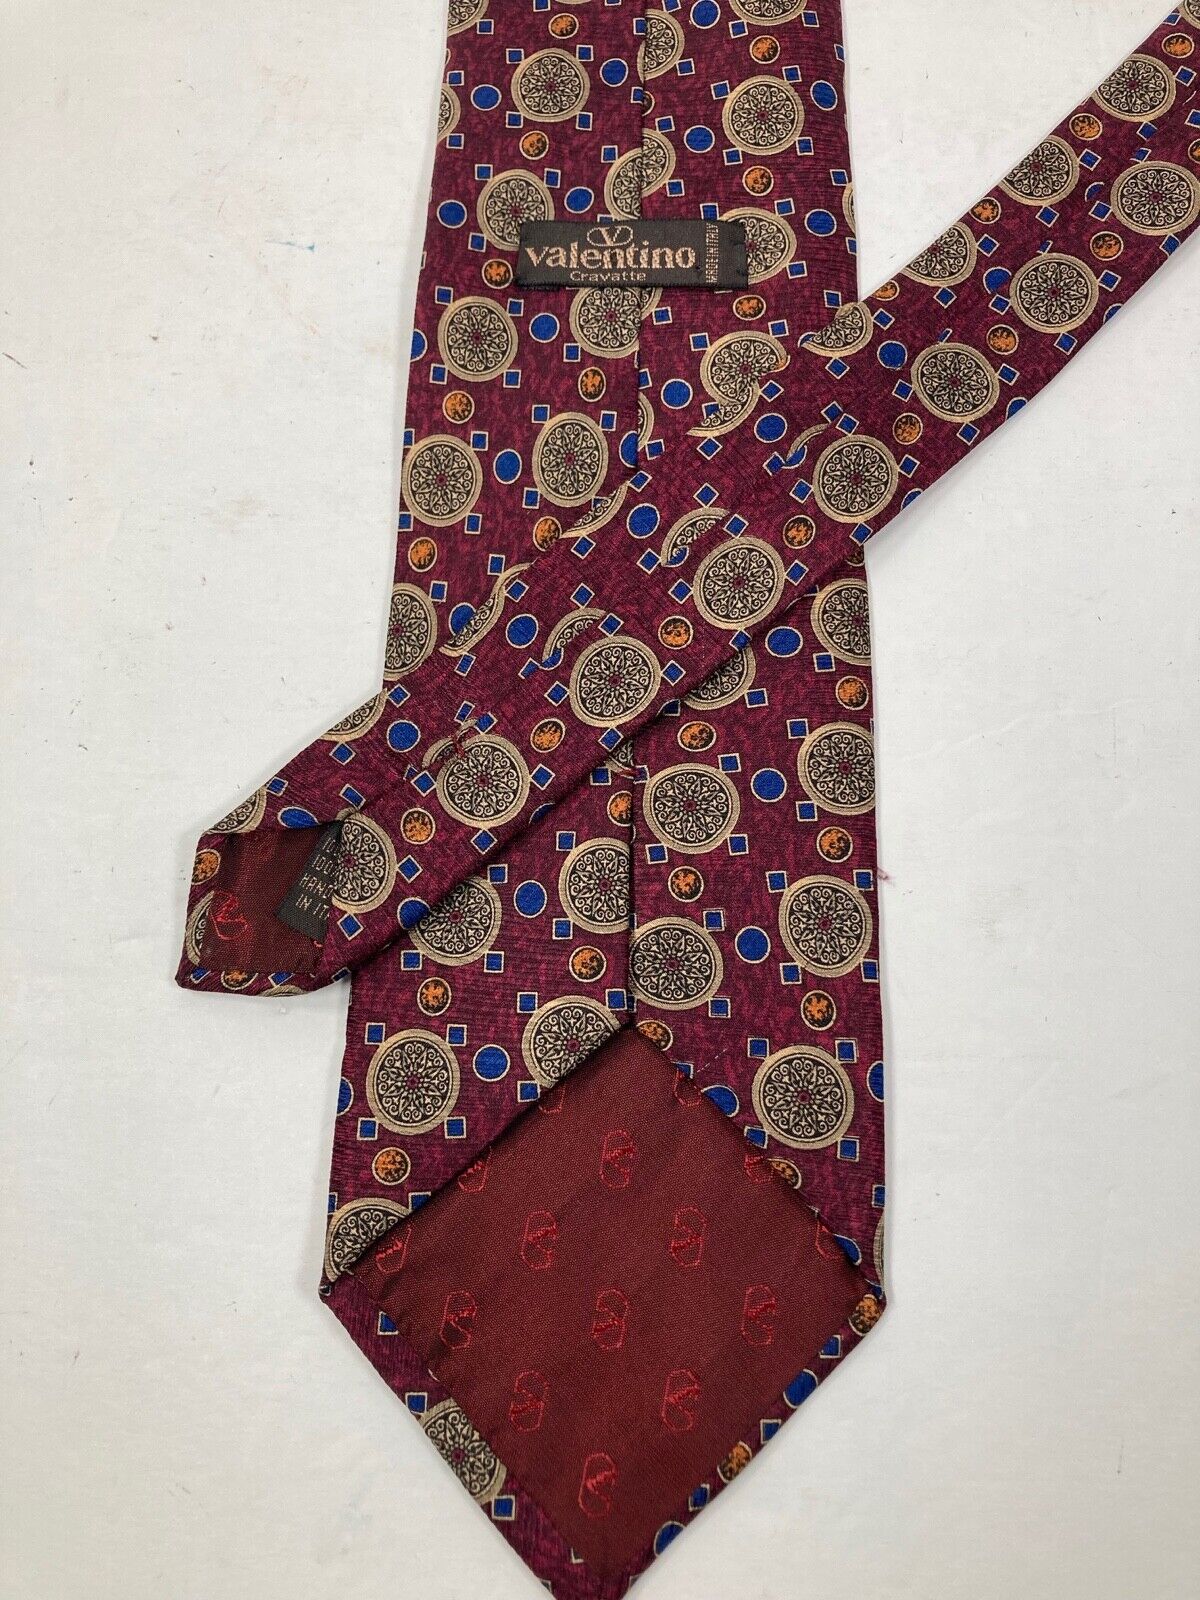 Valentino Cravatte RN 54784 100% Men's Tie